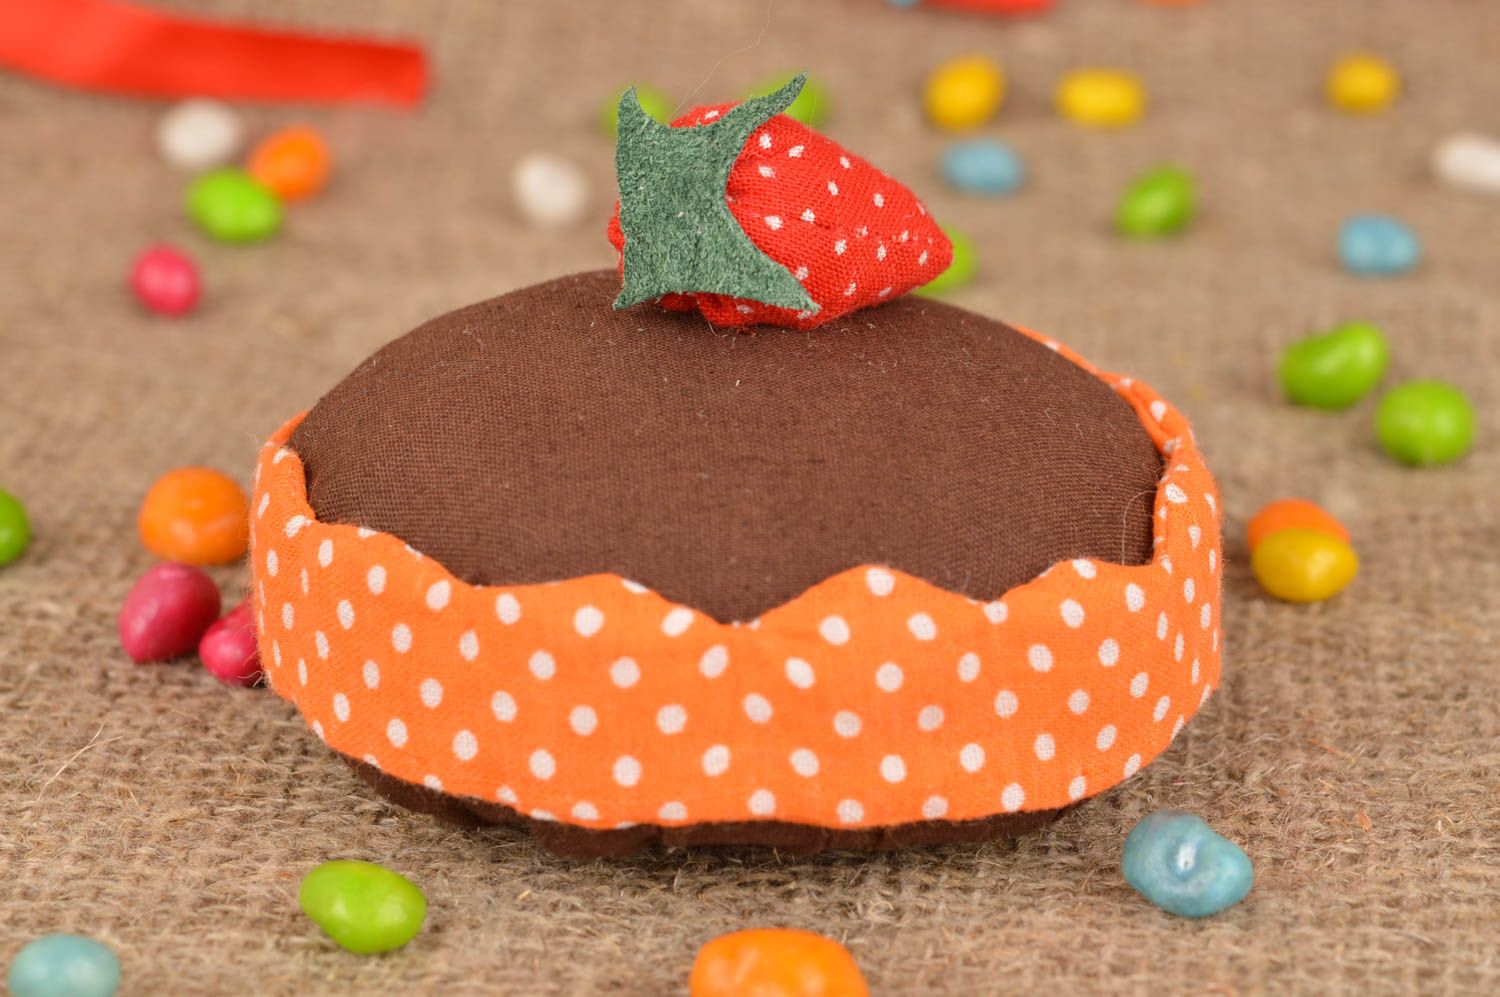 Decorative handmade soft toy for home interior strawberry cake nursery decor photo 1